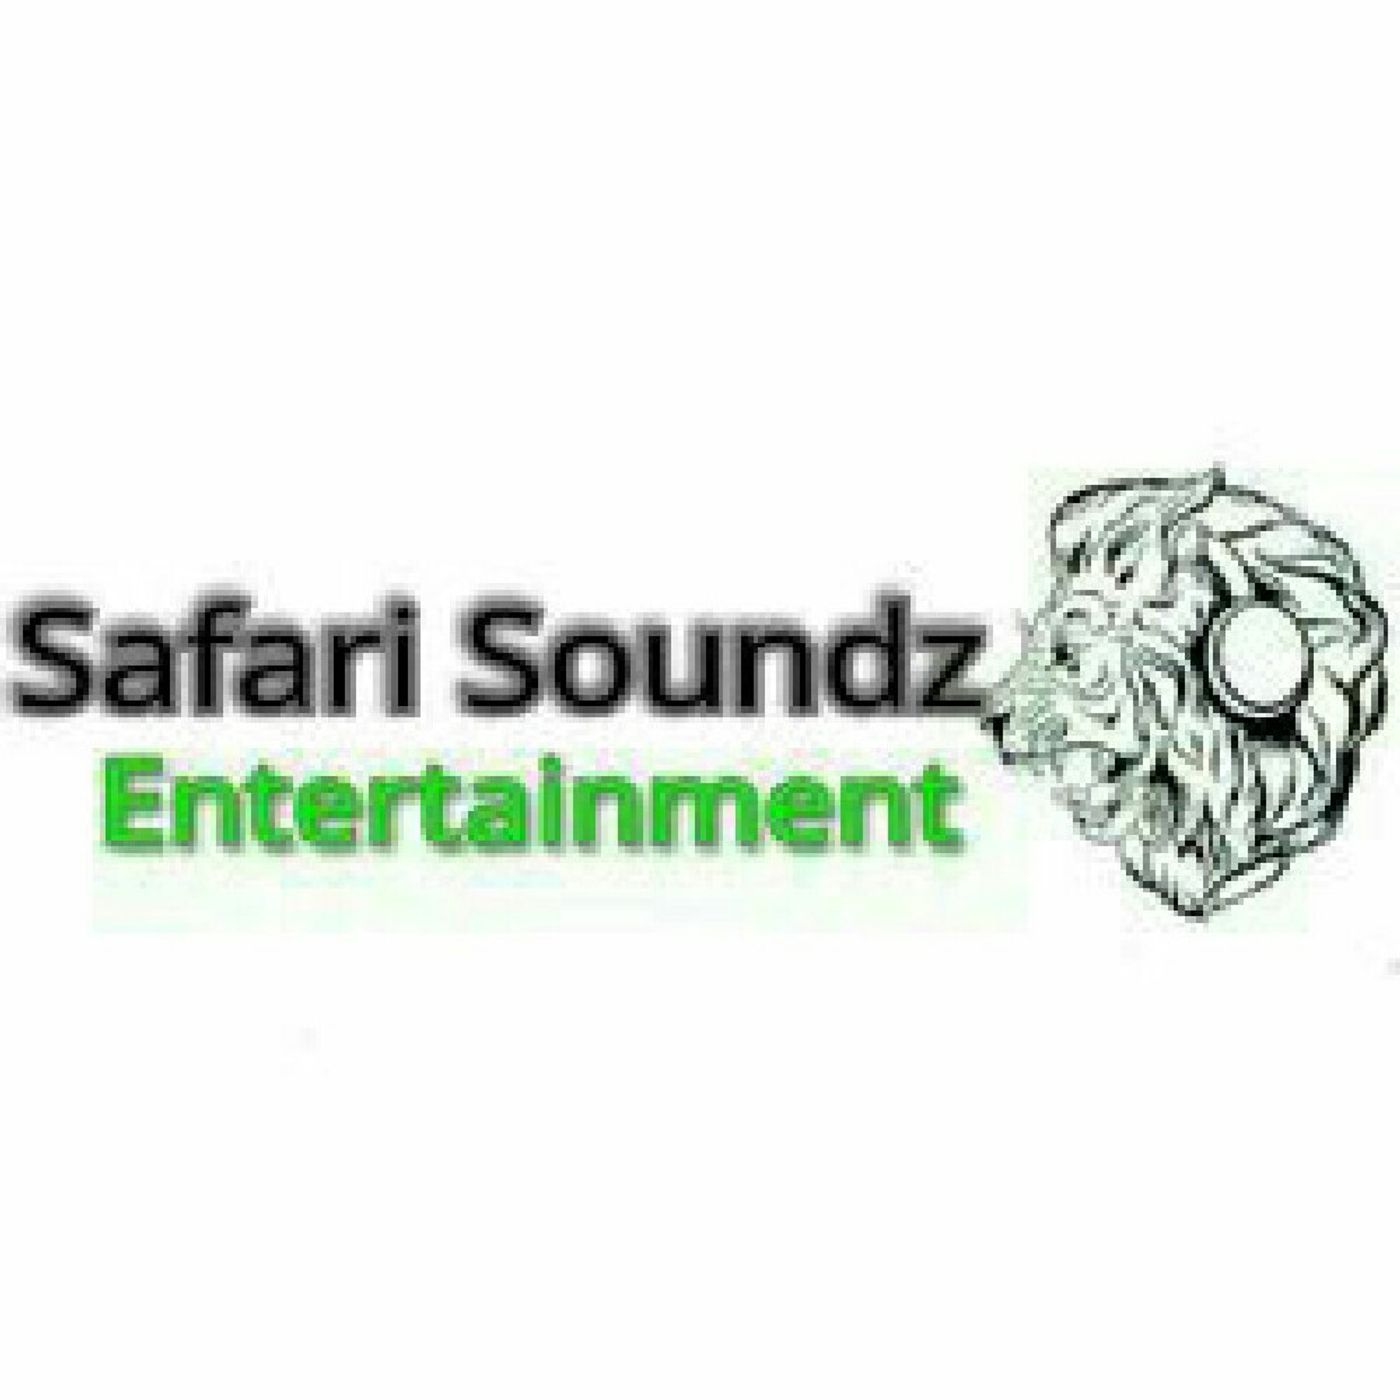 SAFARI SOUNDZ ENTERTAINMENT (Media)